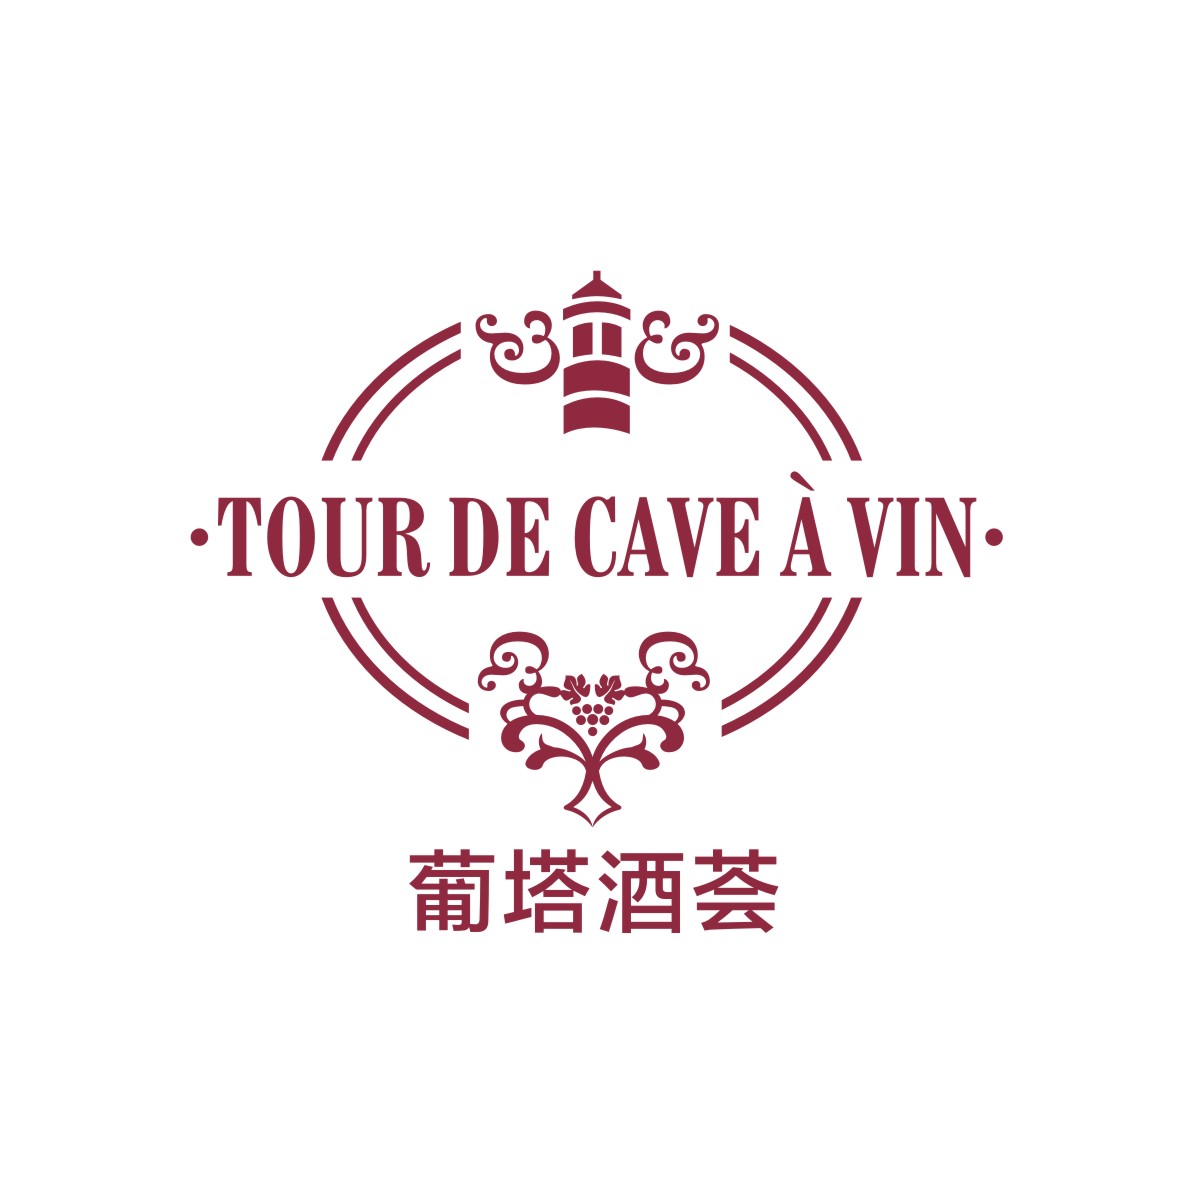 刘轶商标葡塔酒荟 TOUR DE CAVE A VIN（35类）商标买卖平台报价，上哪个平台最省钱？